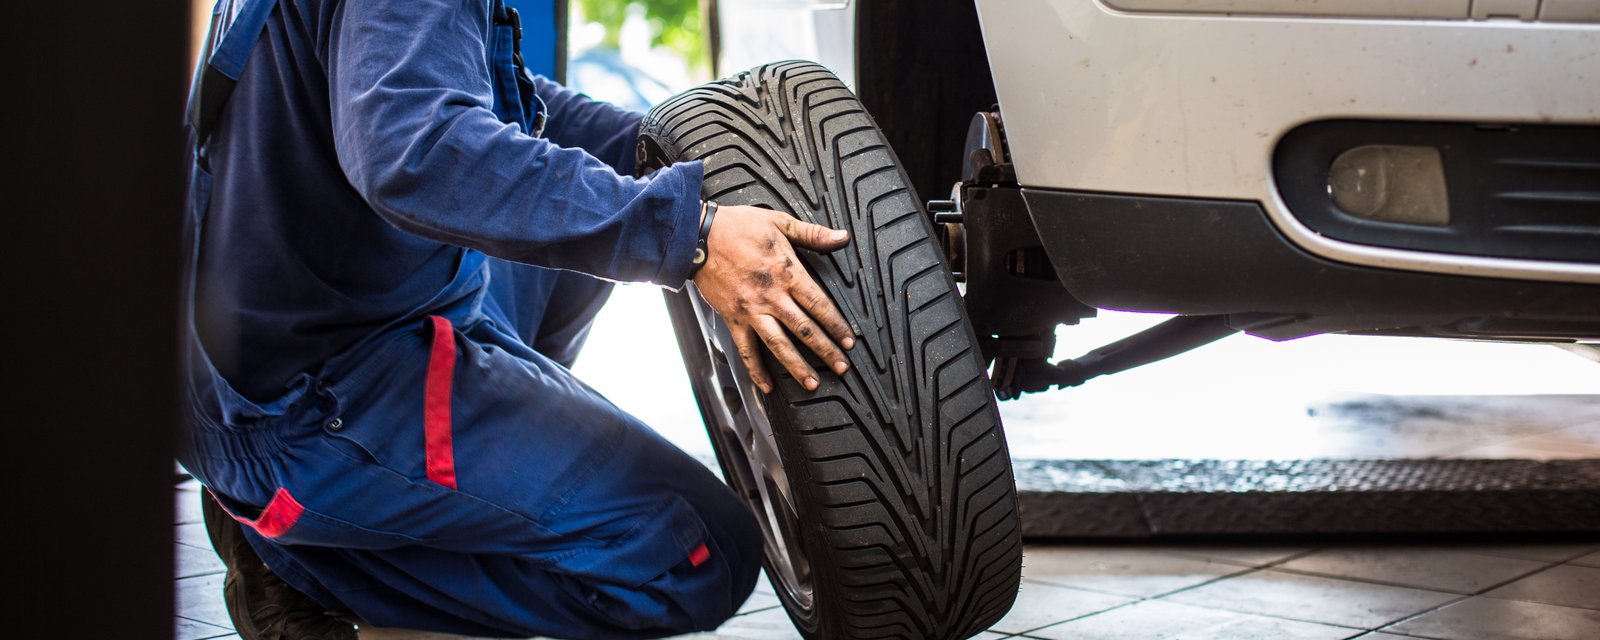 Vous aurez le droit de retirer vos pneus d'hiver dès mercredi